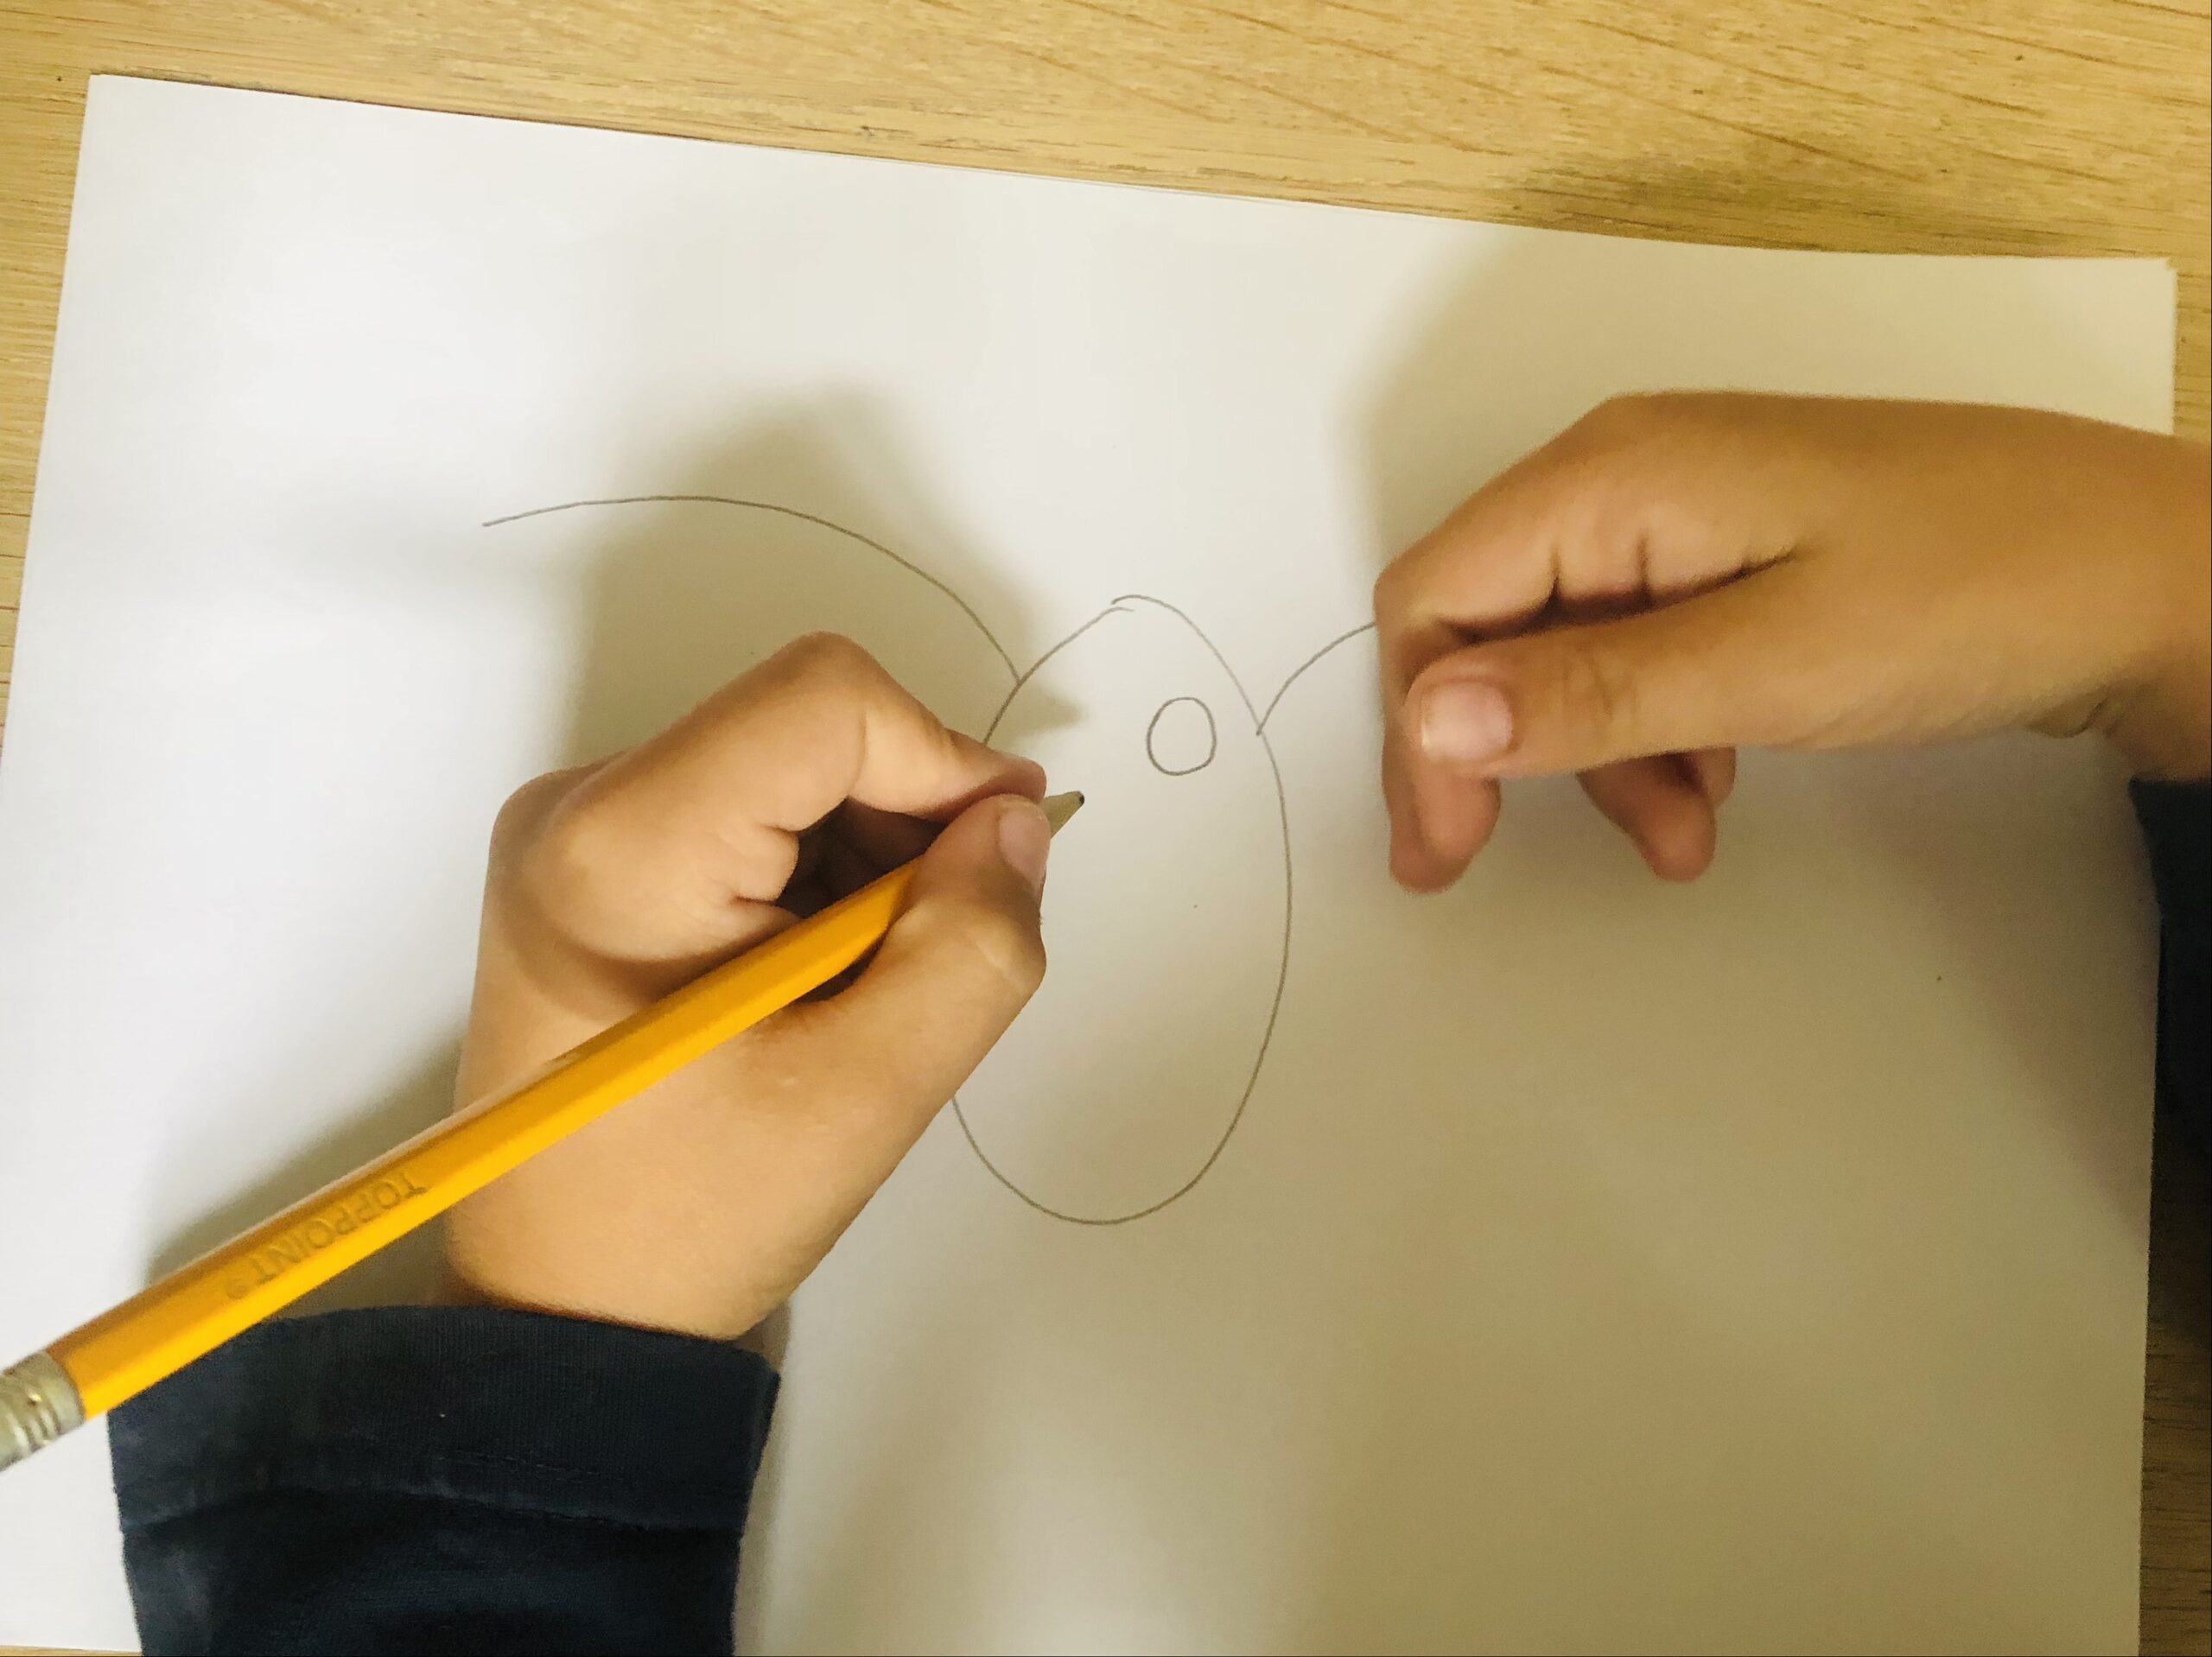 Bild zum Schritt 4 für das Bastel- und DIY-Abenteuer für Kinder: 'Jetzt malt ihr zwei kleine Kreise in den Körper der...'